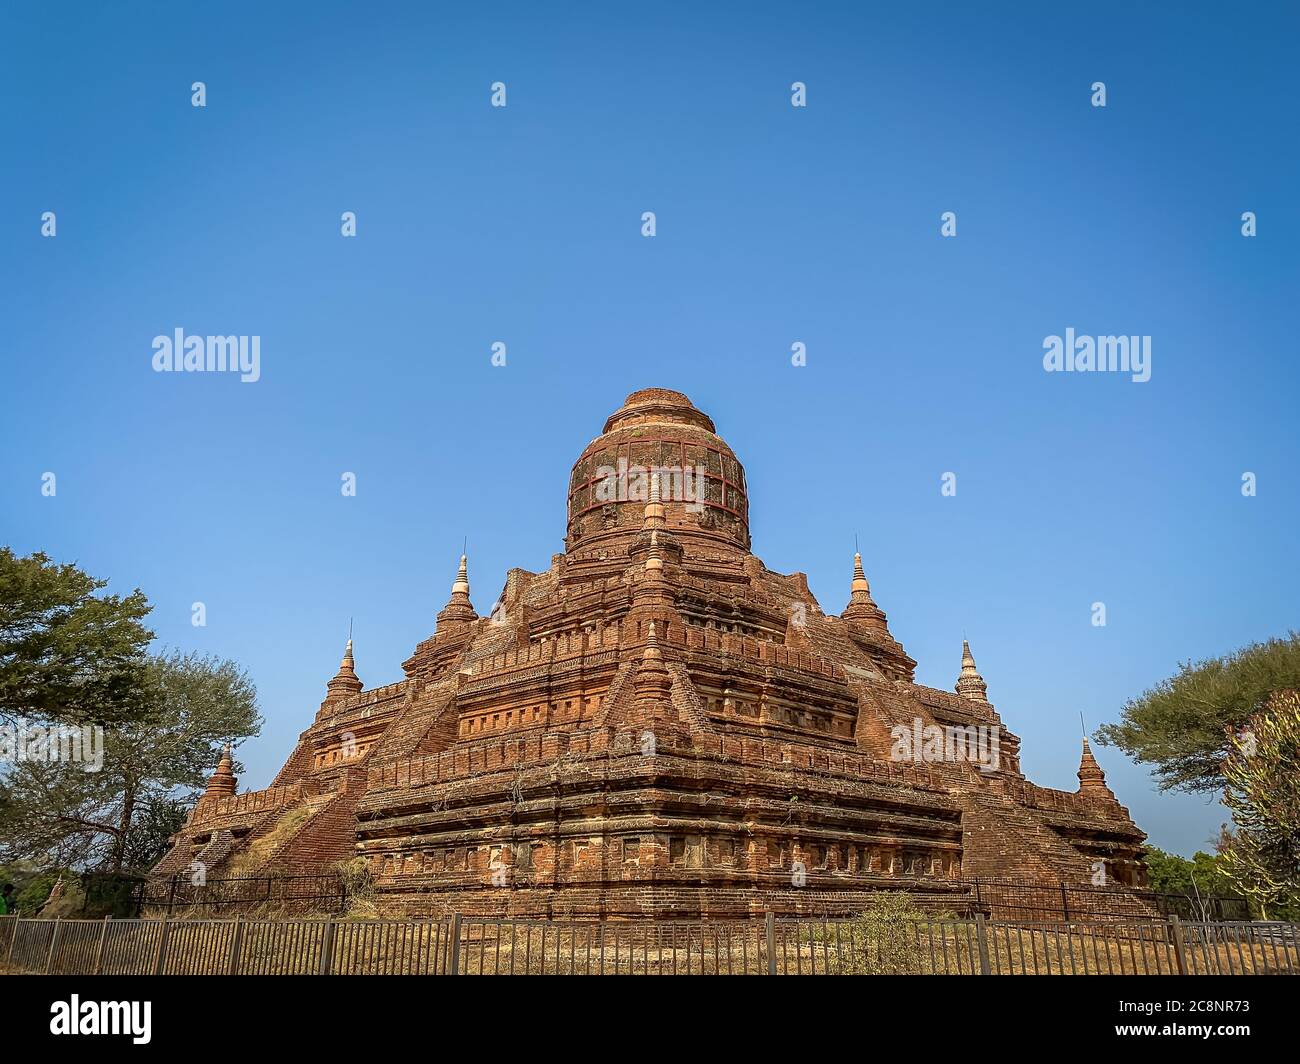 Ancienne Pagode de Mingalazedi, ou la 'Bénédiction Stupa' dans le Vieux Bagan, au Myanmar. Stupa en forme de pyramide dans un paysage boisé avec fond bleu ciel Banque D'Images